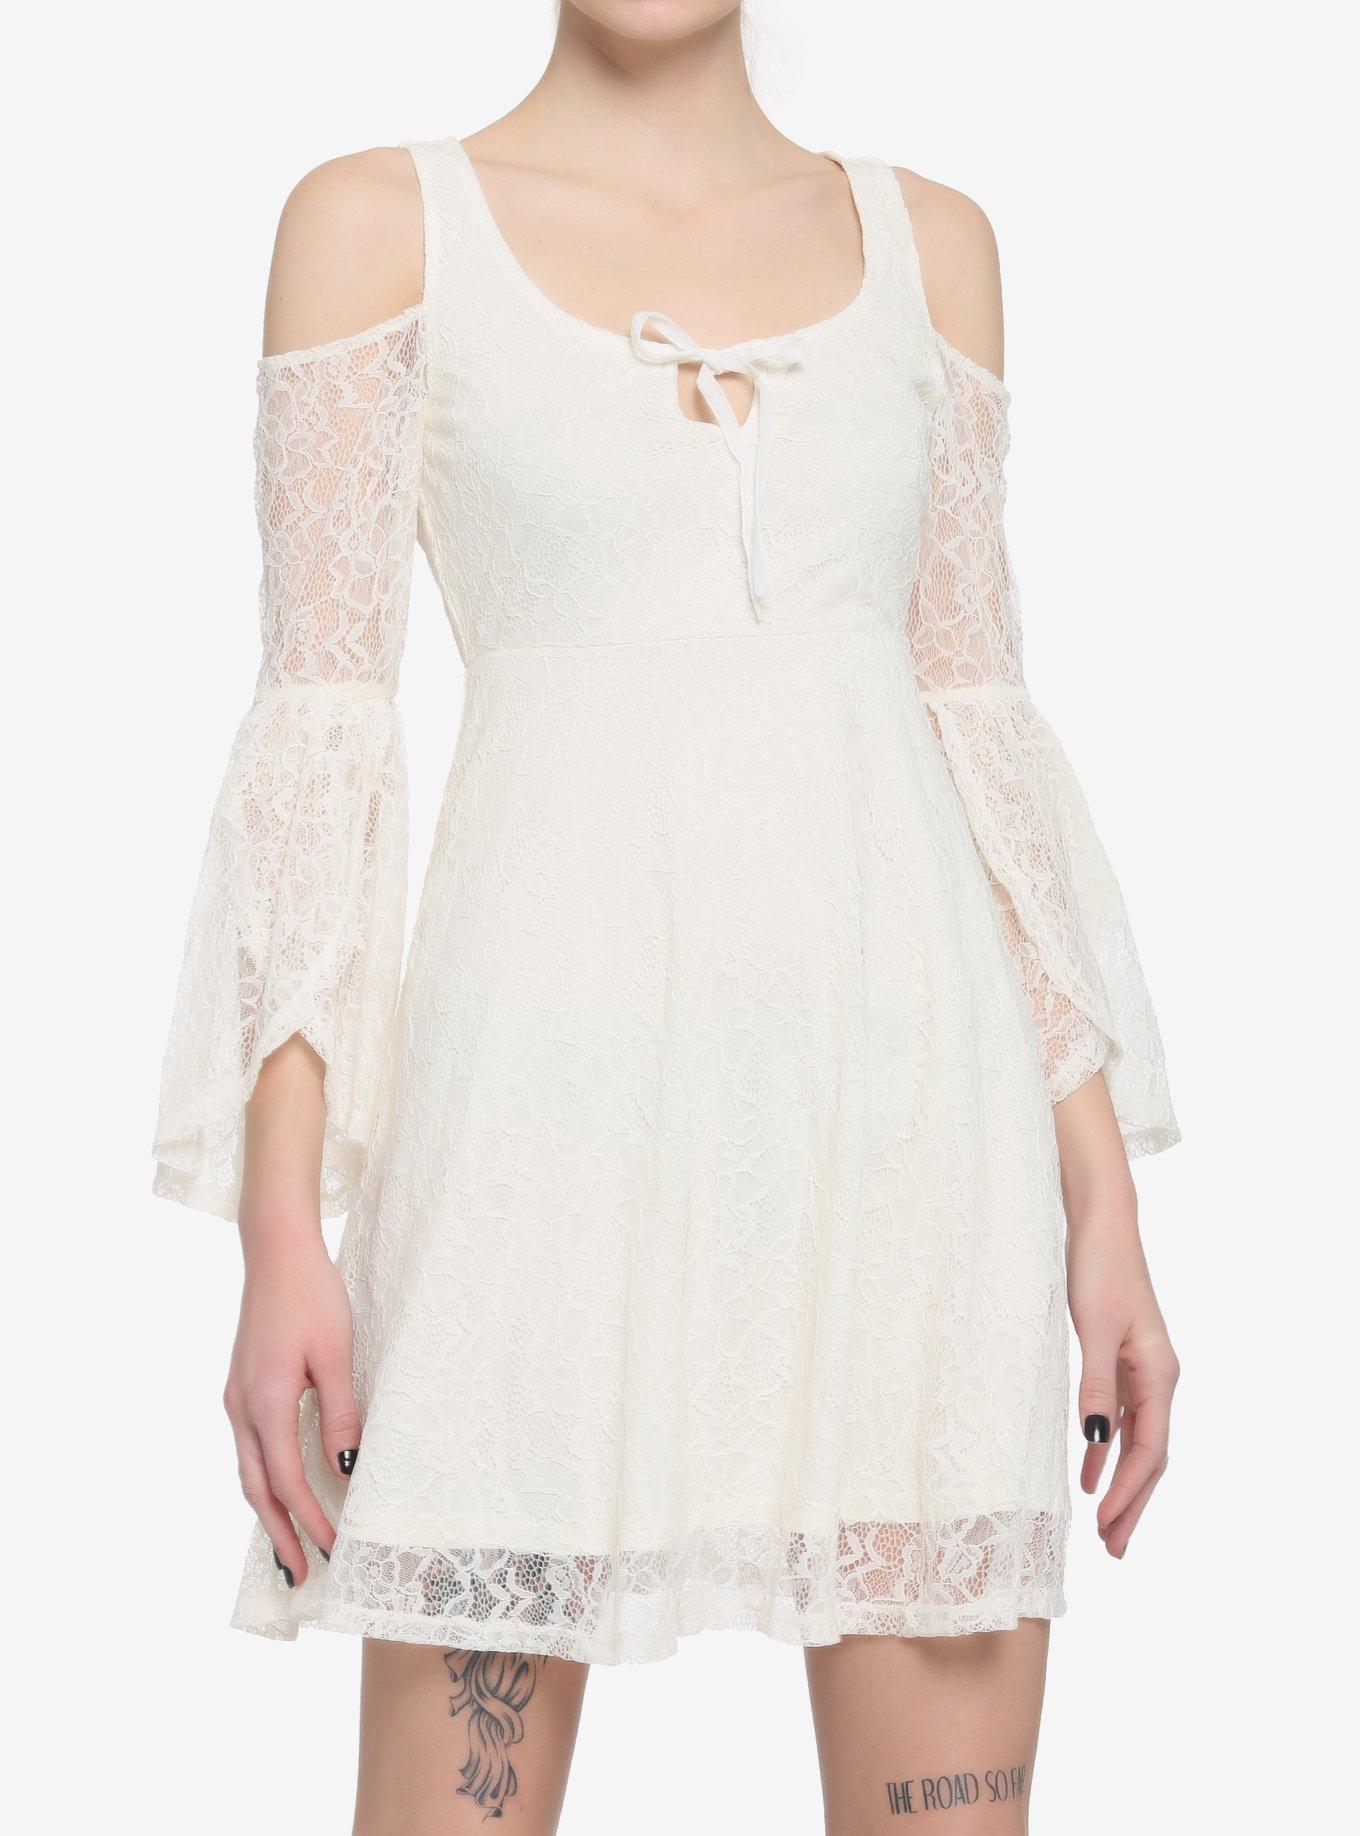 Ivory Cold Shoulder Bell-Sleeve Lace Dress, IVORY, hi-res